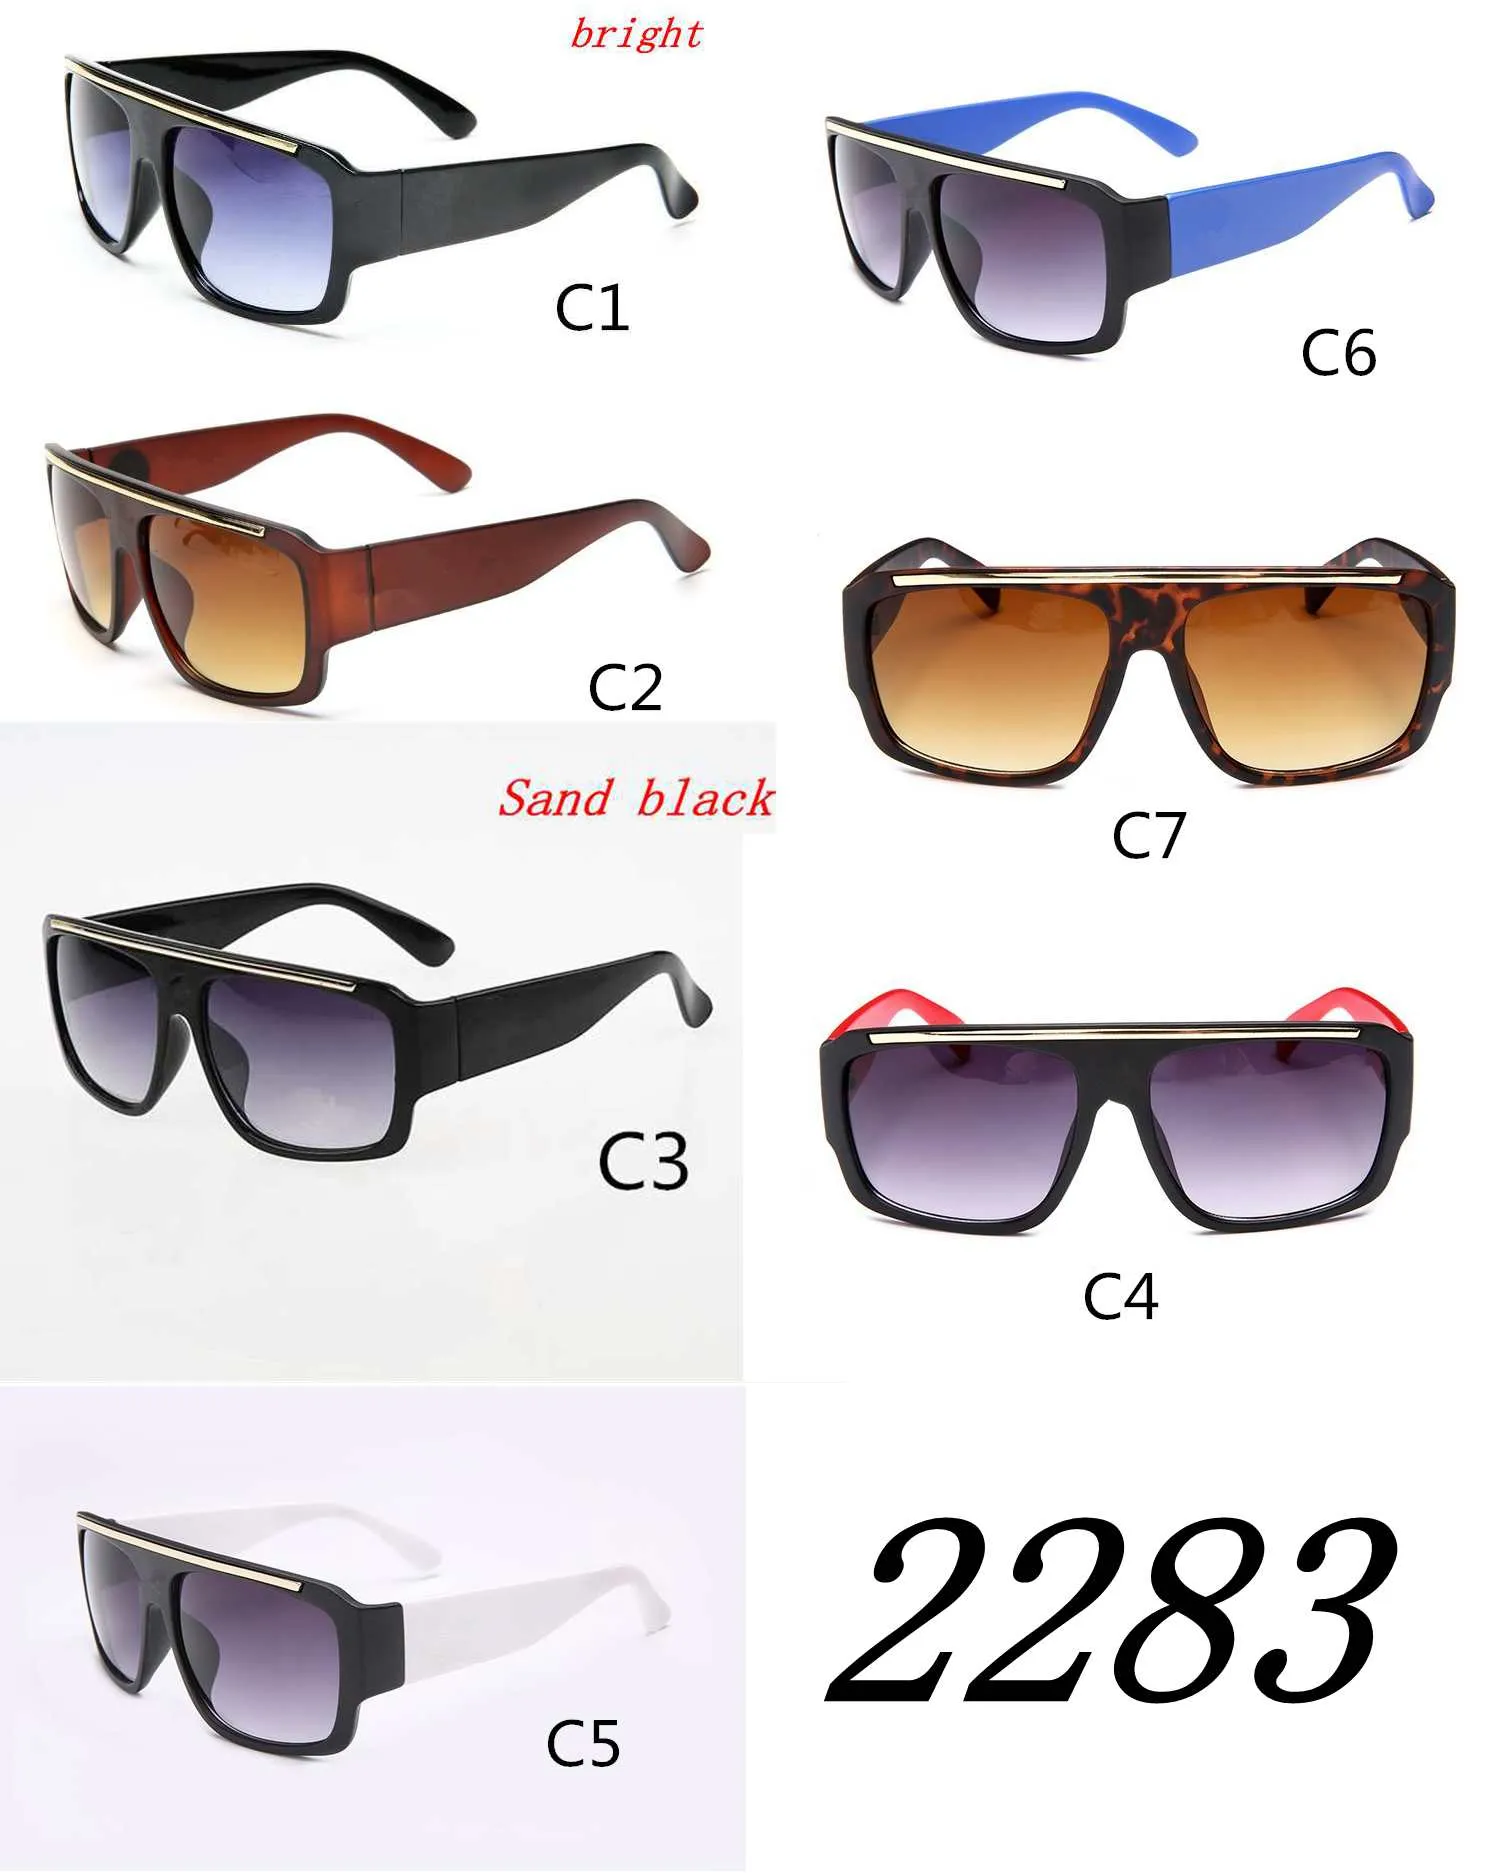 Marca homens mulheres Óculos de Sol Moda Elegante Óculos De Sol Do Vintage Sapo Óculos Preto Largo Quadros Quadro Lente ocular desgaste qualidade A +++ MOQ = 10